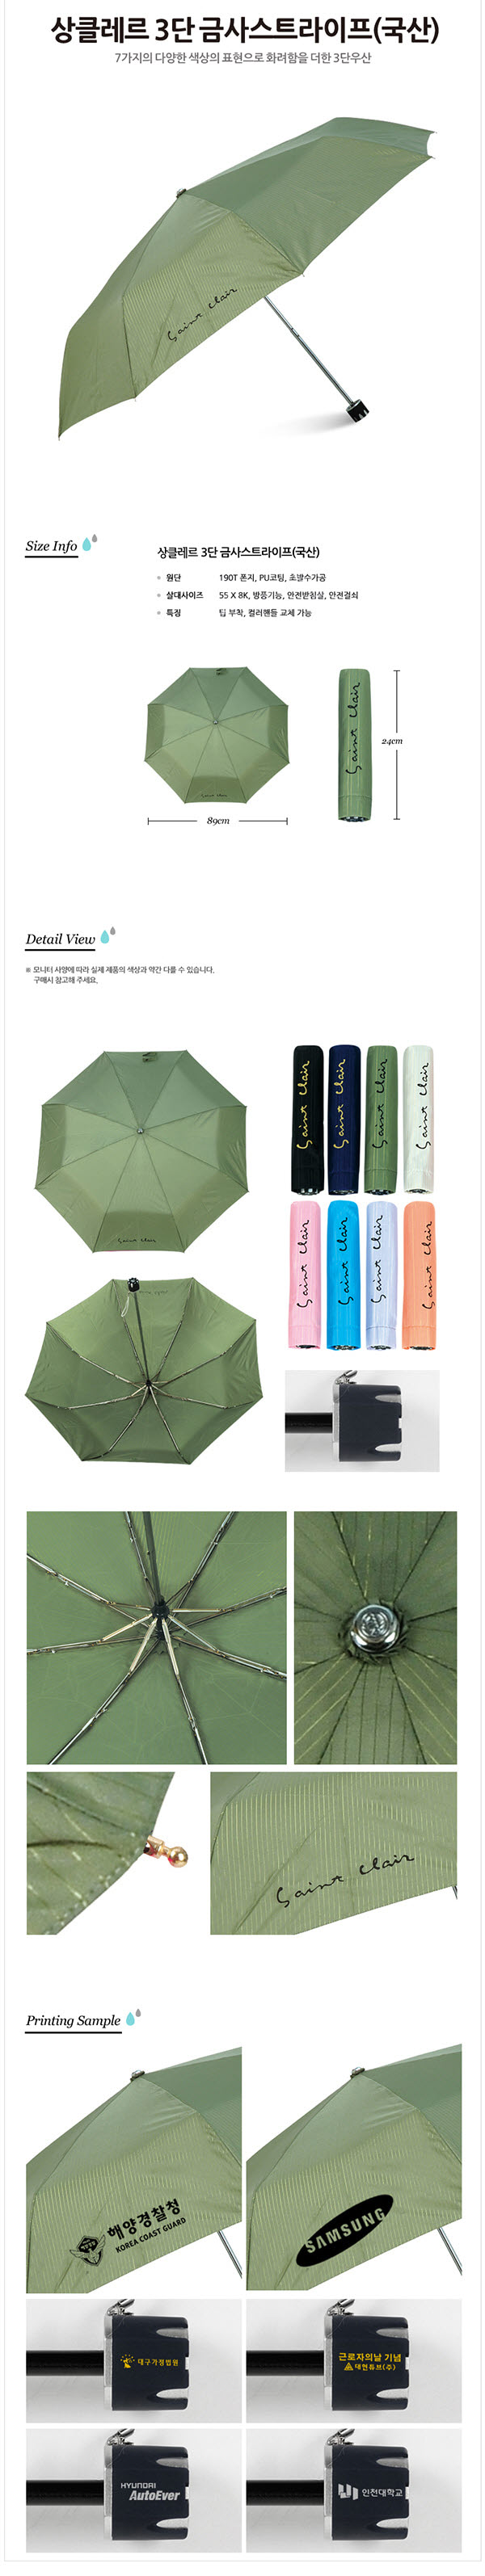 상클레르 3단 금사스트라이프(국산), 7가지의 다양한 색상의 표현으로 화려함을 더한 3단 우산, 원단: 190T폰지/PU코팅/초발수가공, 살대사이즈: 55*8K, 방풍기능, 안전받침살, 안전걸쇠, 특징: 팁 부착, 컬러핸들 교체 가능